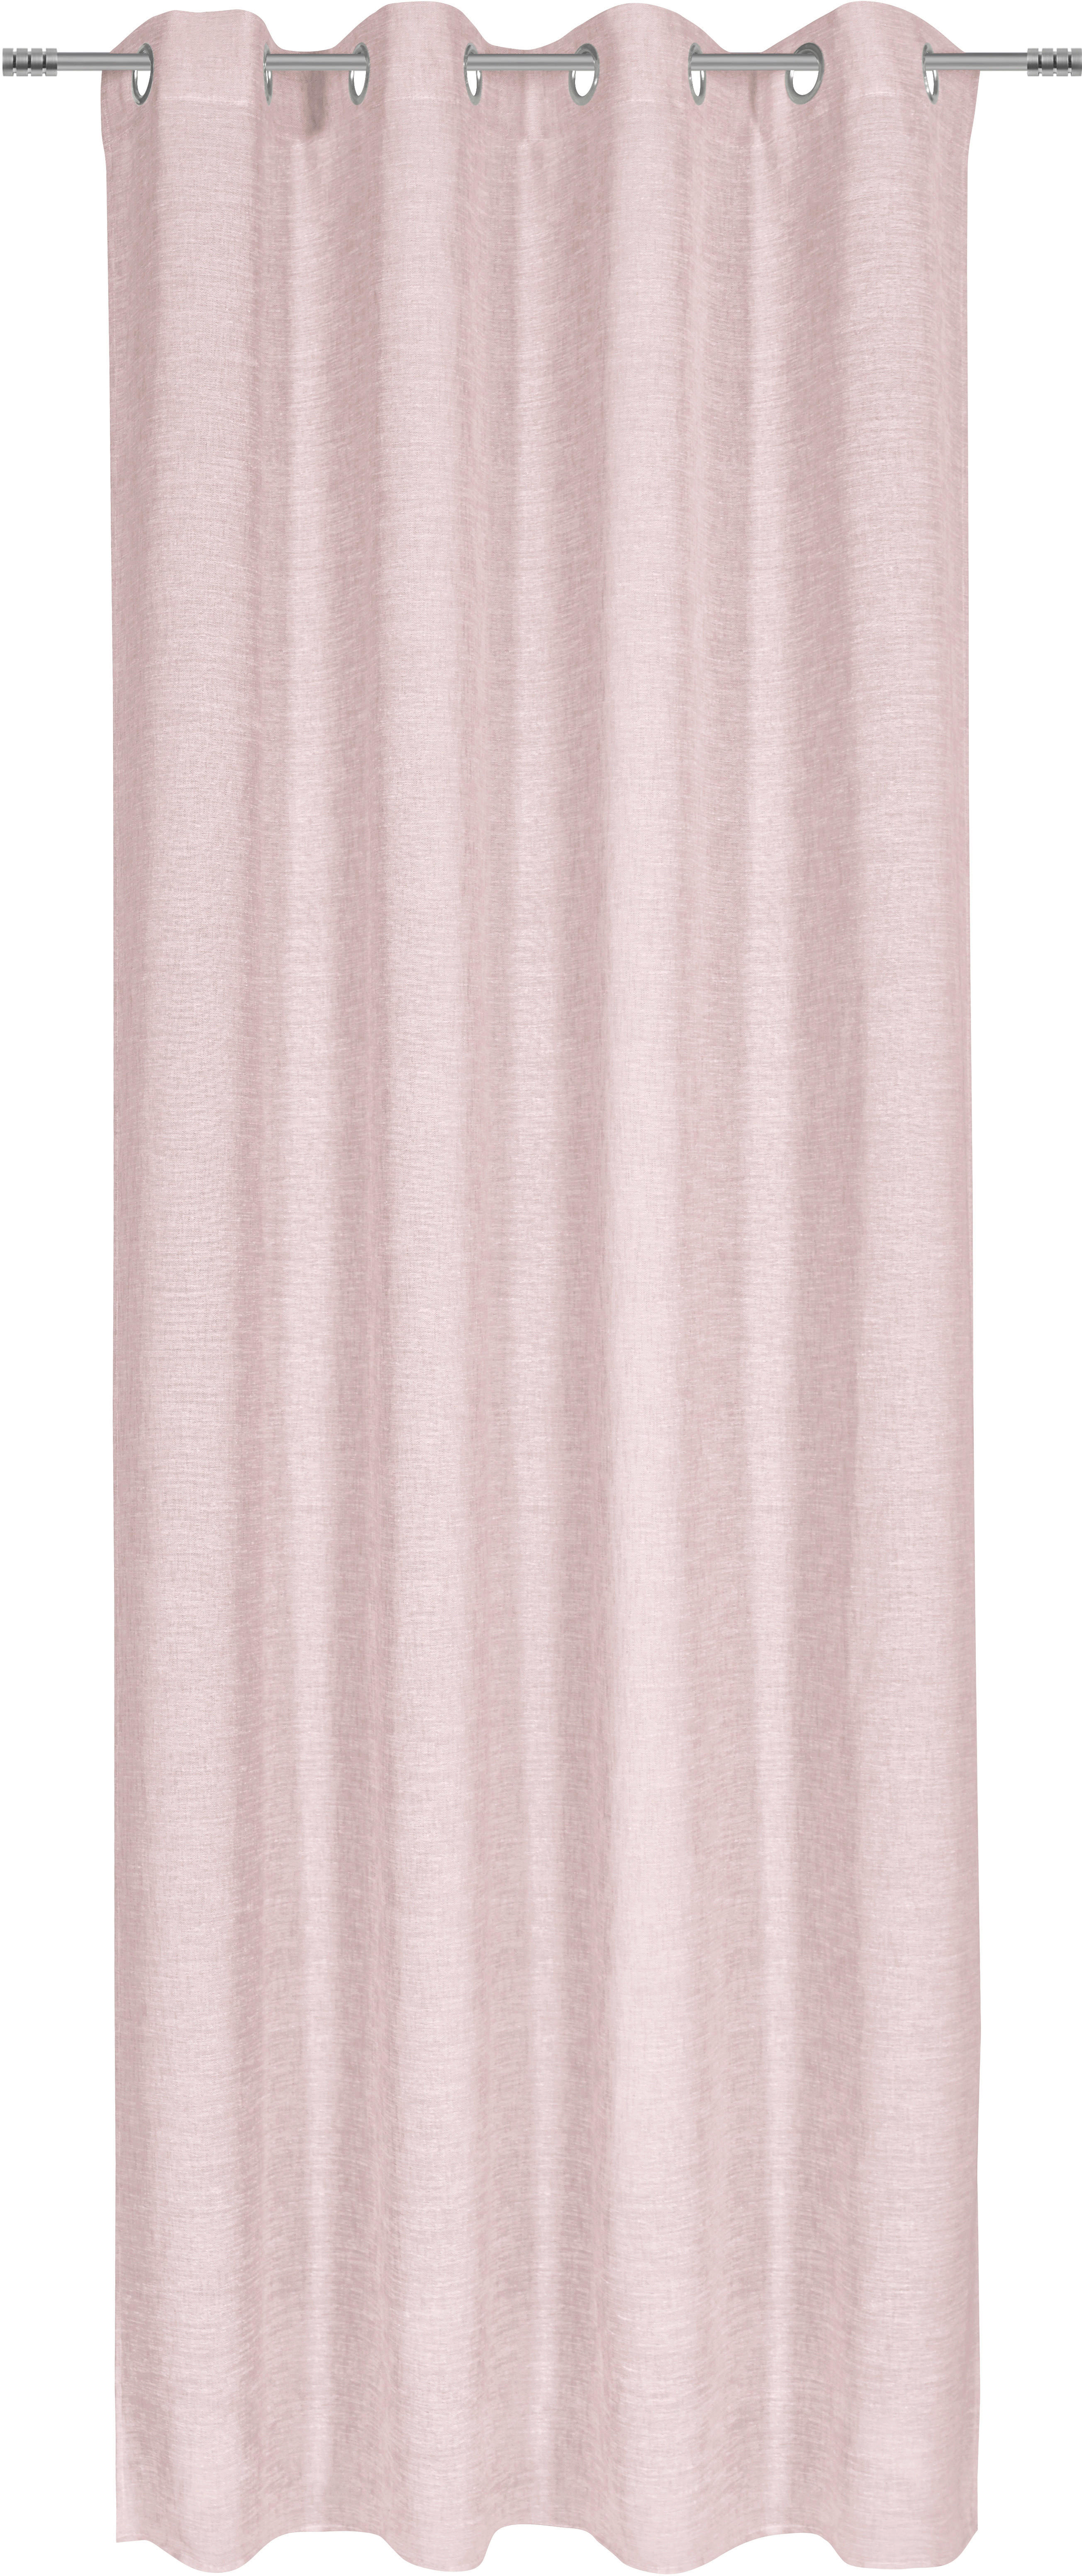 ÖSENSCHAL Riga halbtransparent 140/245 cm   - Rosa, KONVENTIONELL, Textil (140/245cm) - Esposa